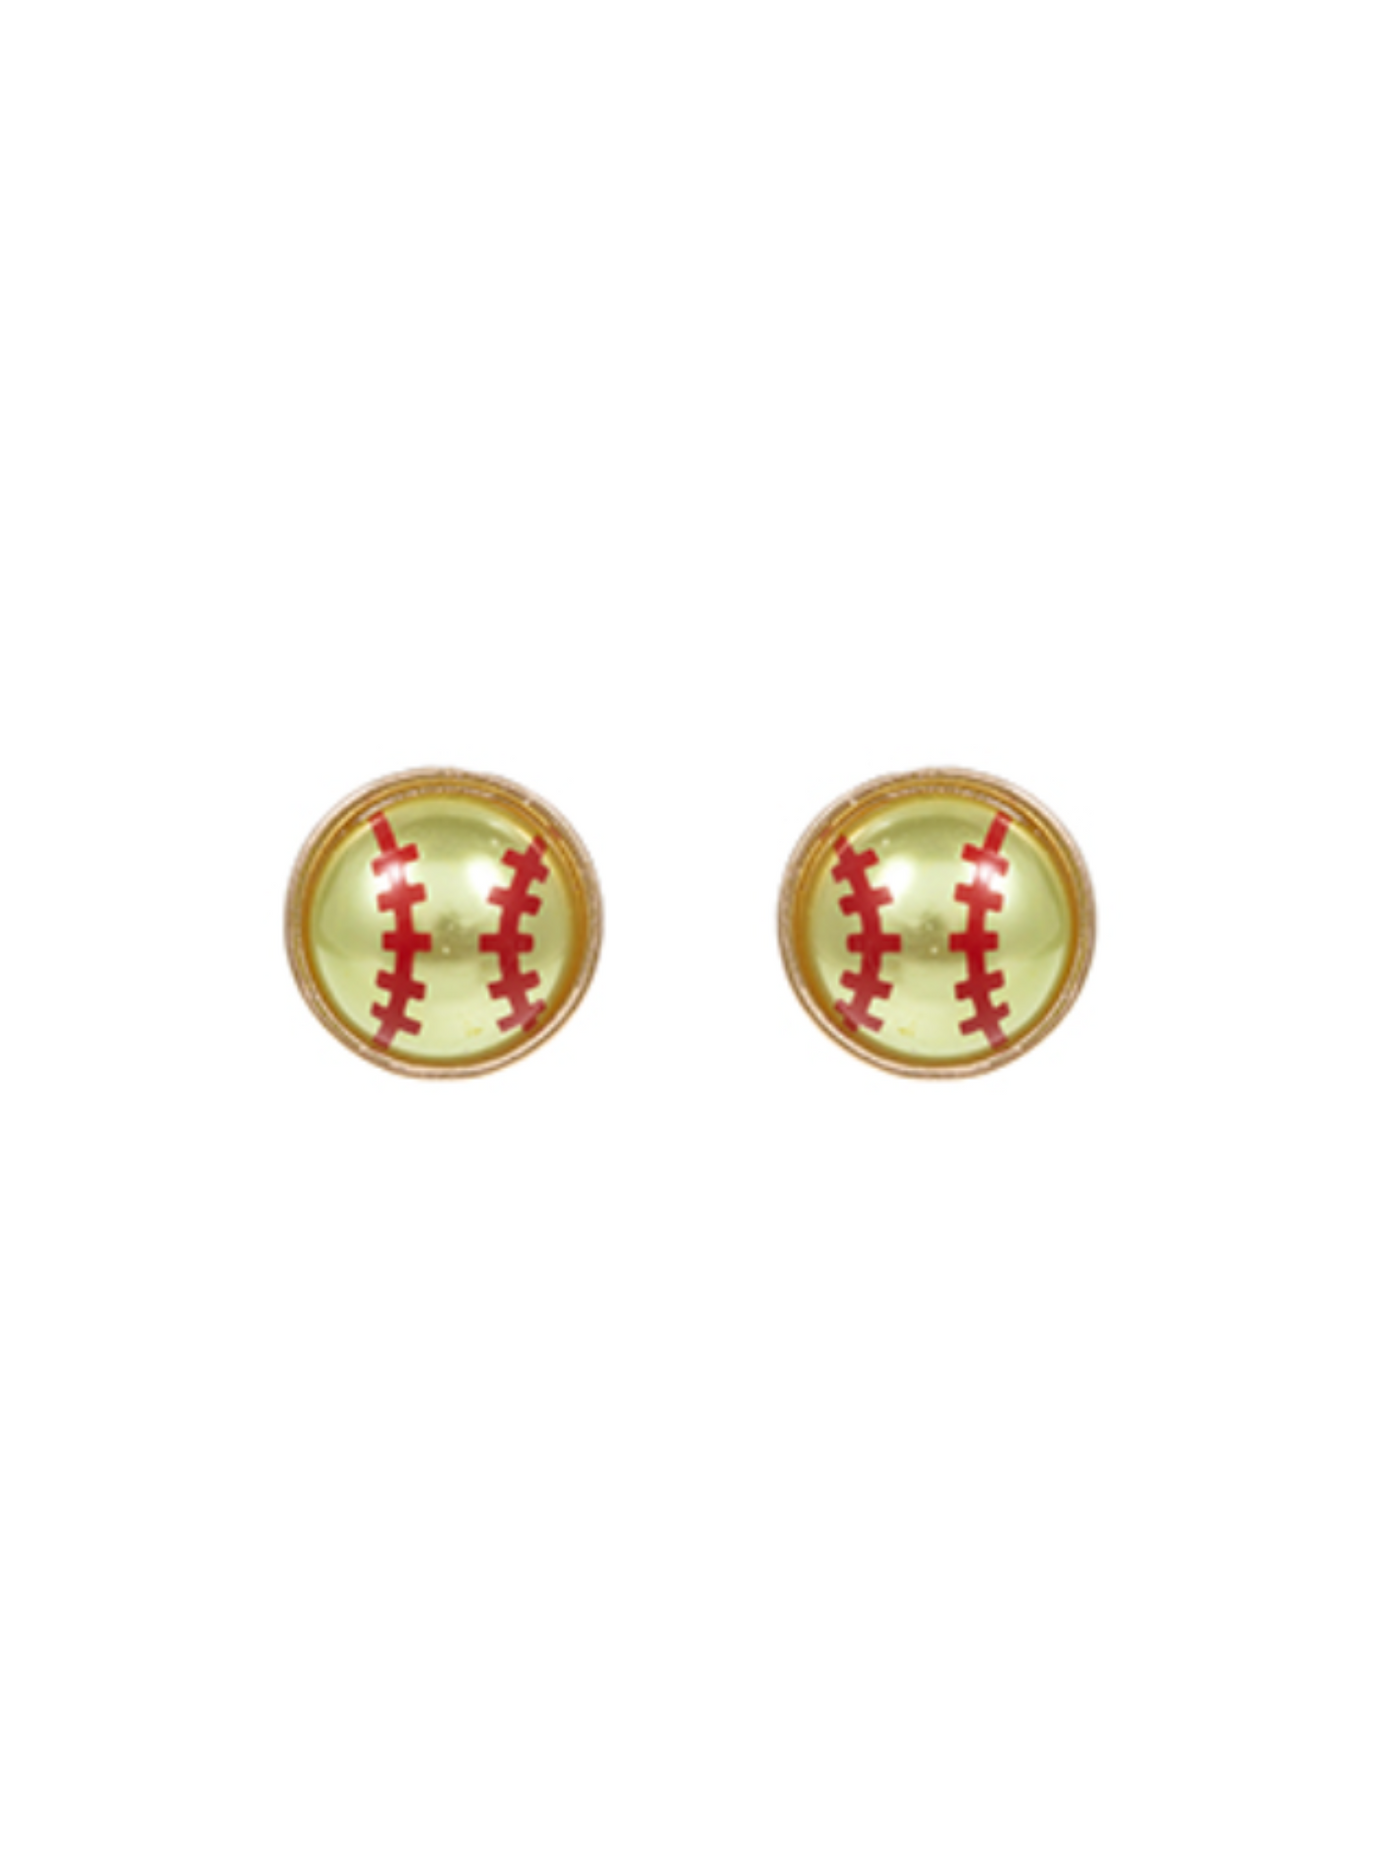 Softball Stud Earrings on white background.